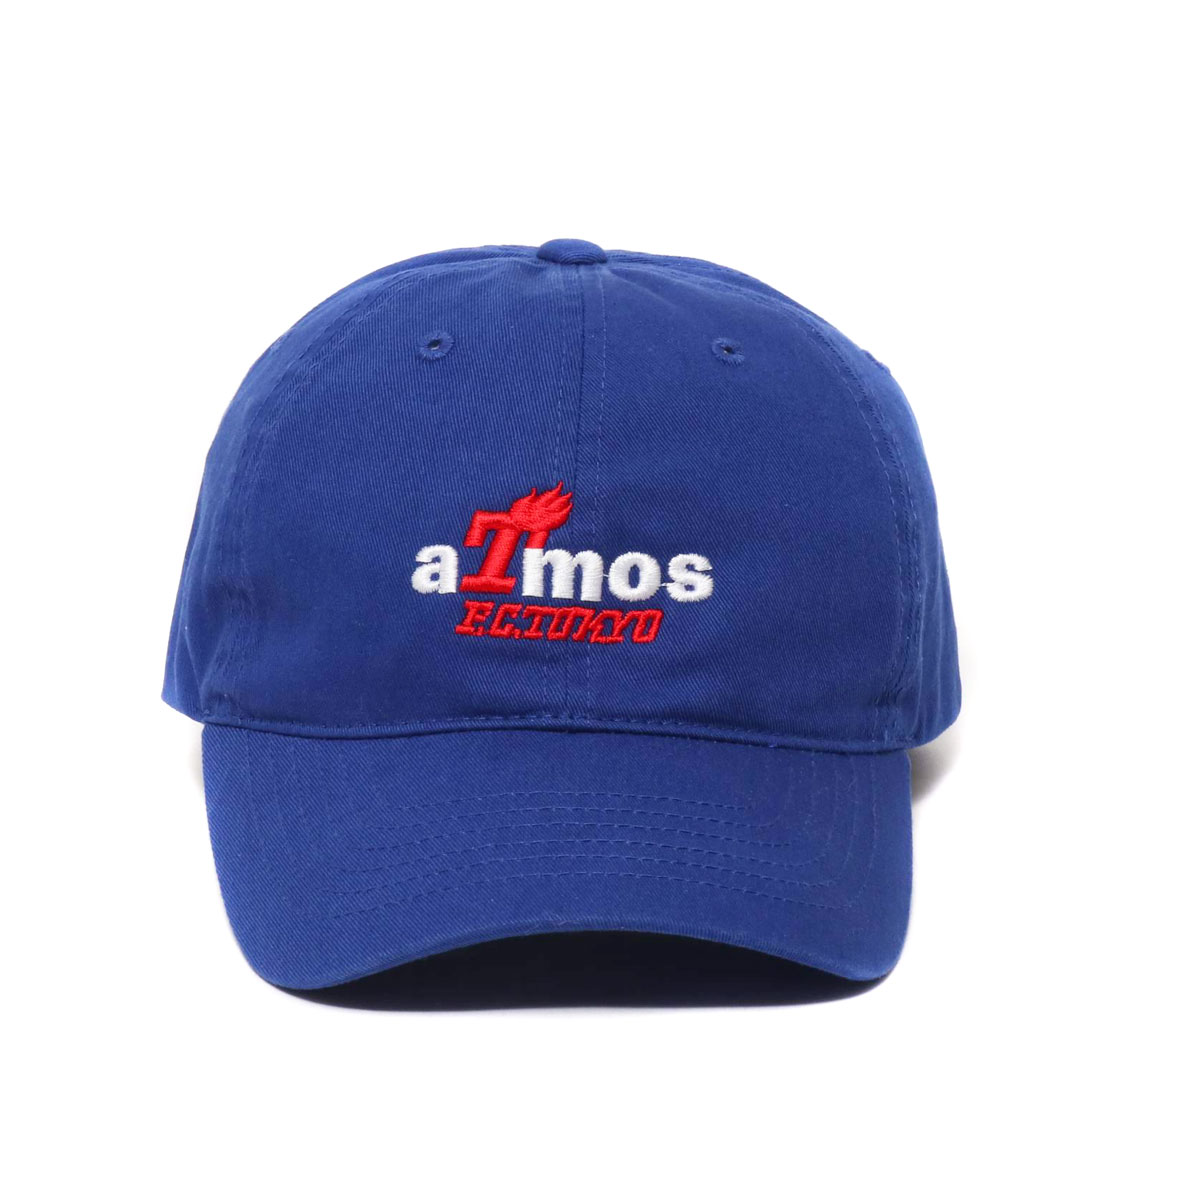 atmos x FC TOKYO T-LOGO 6PANEL CAP(BLUE)(アトモス エフシートウキョウ ティーロゴシックスパネルキャップ)【メンズ】【レディース】【キャップ】【20SP-S】